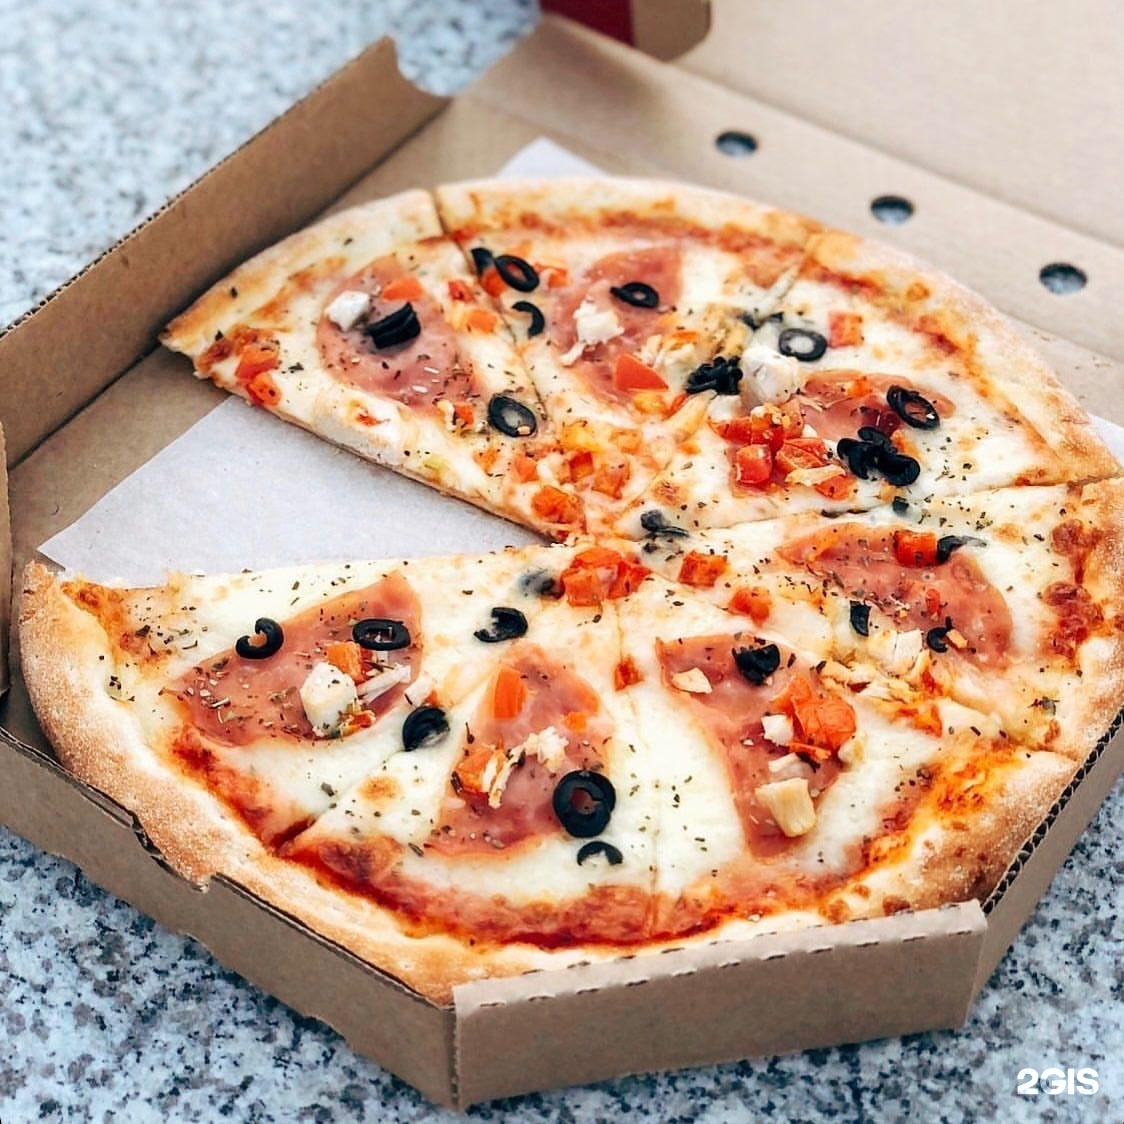 роман хочет заказать пиццу с двумя разными дополнительными начинками для пиццы фото 22